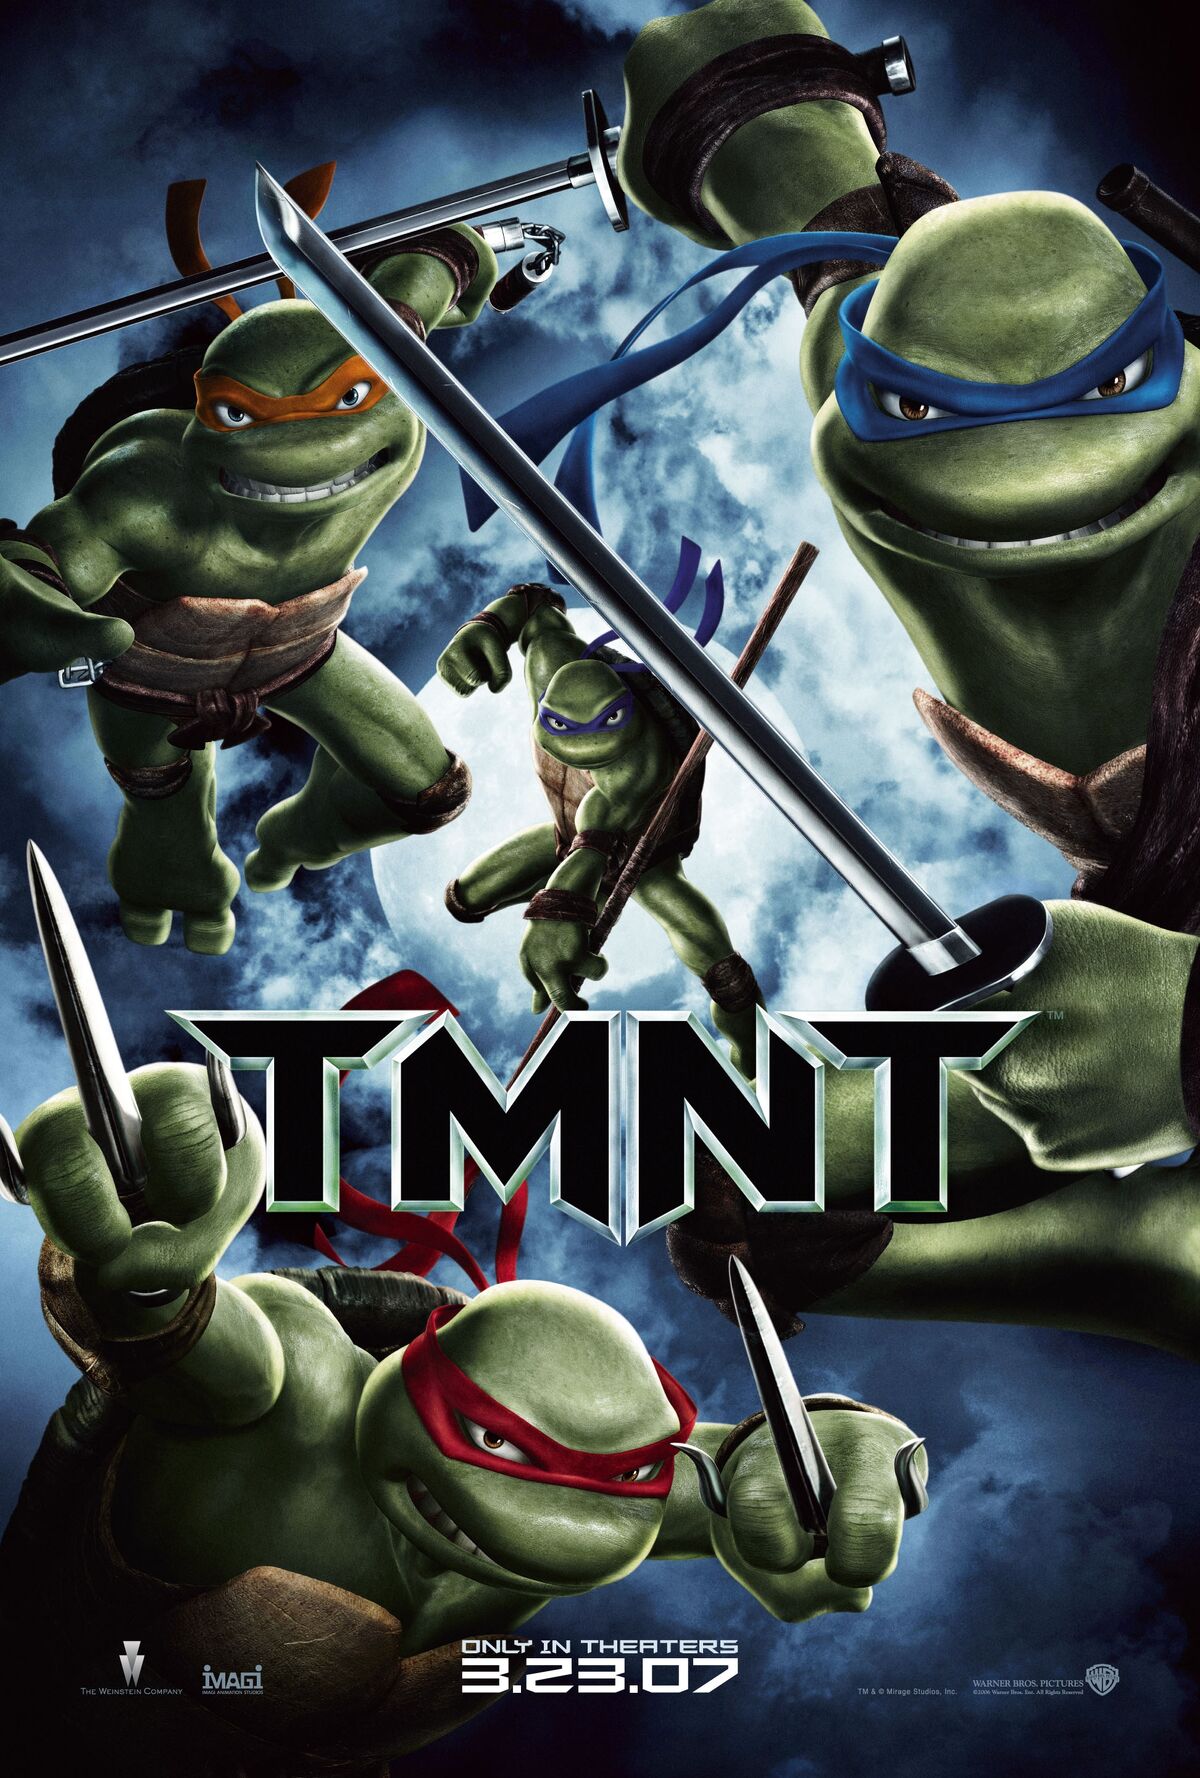 Teenage Mutant Ninja Turtles TMNT - DVD Lot - Three Sealed Movies -  Excellent